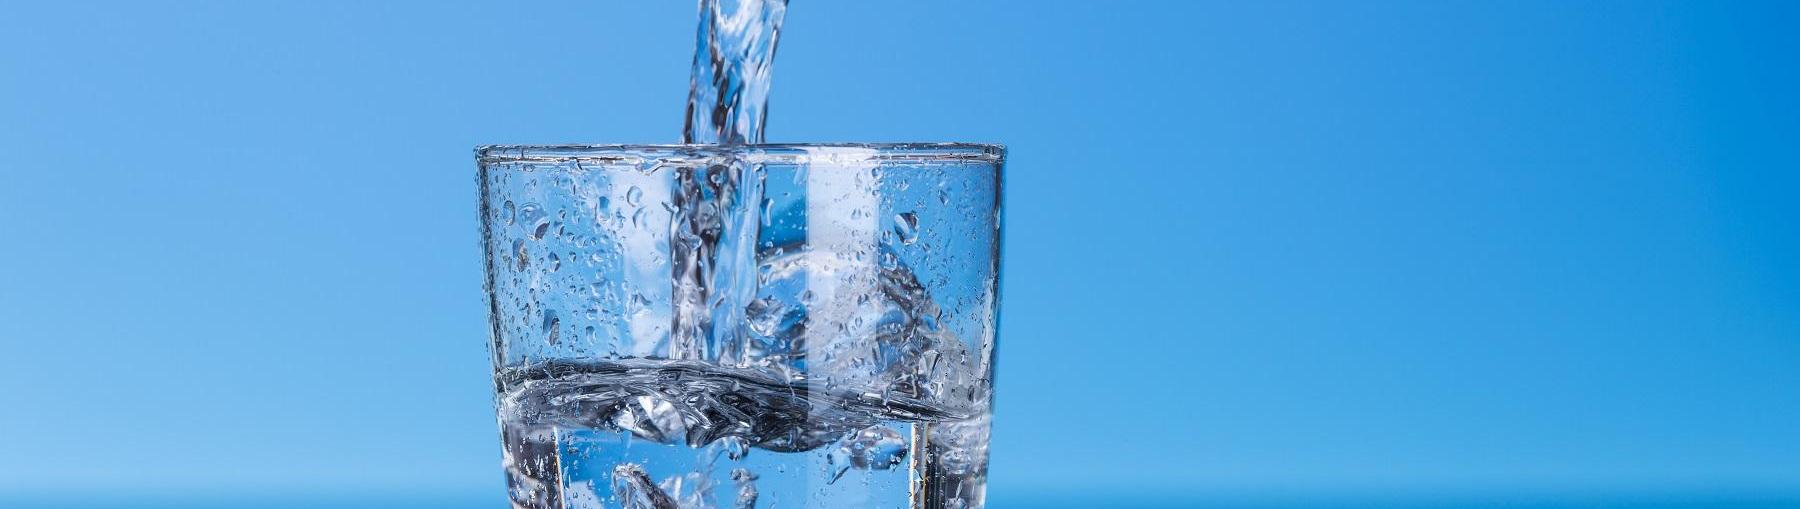 Tak się zarabia w branży wod-kan. Fot. Shutterstock